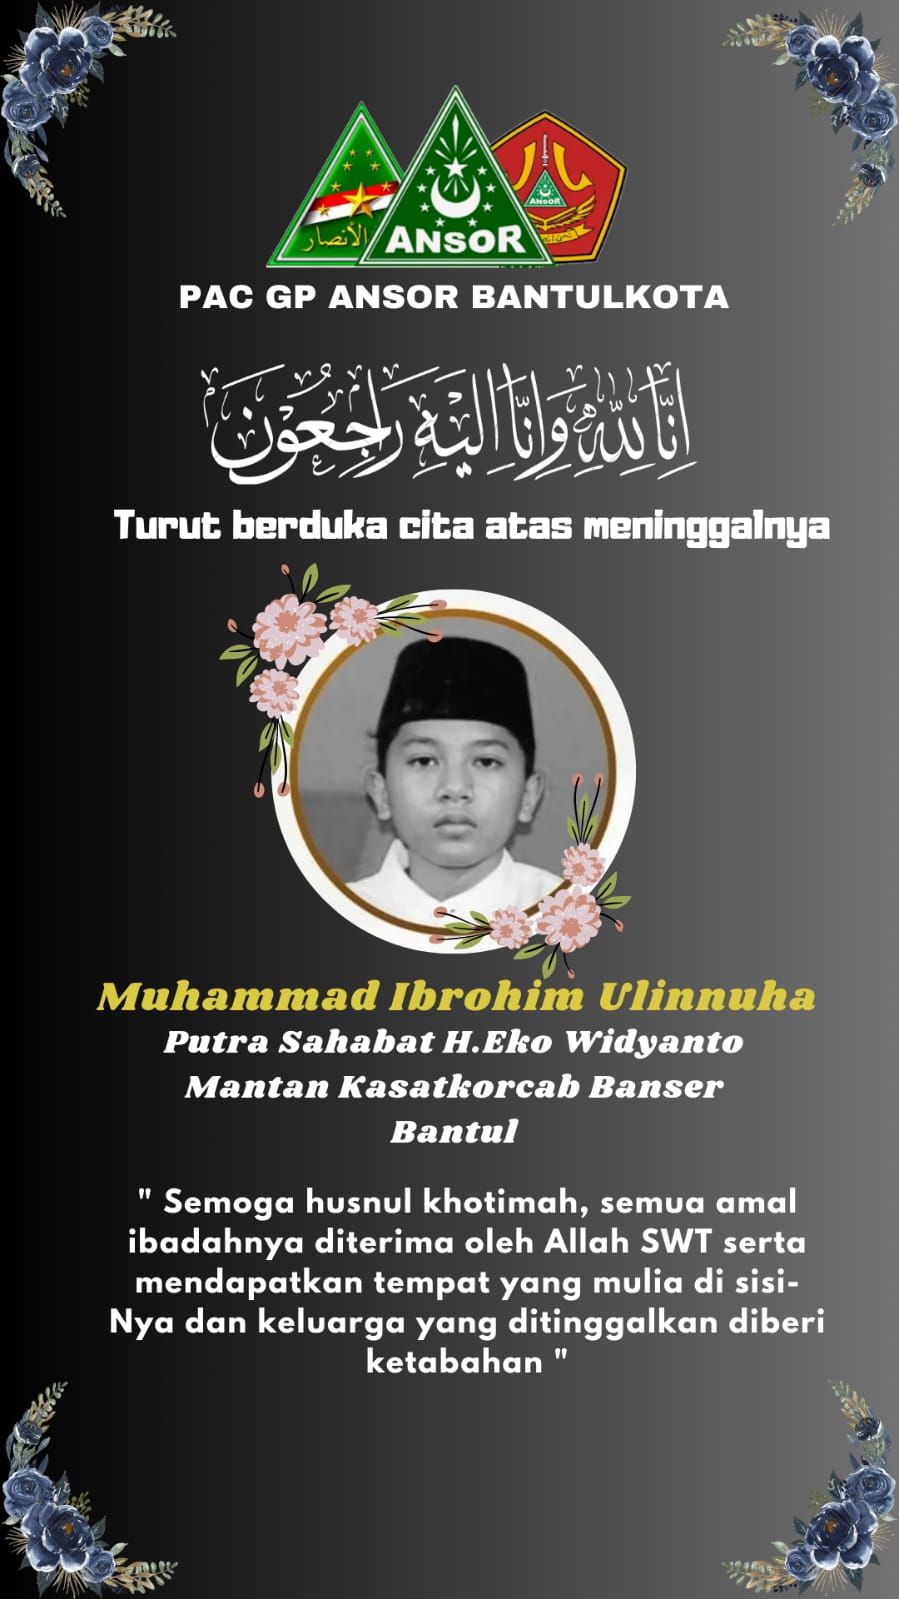 Muhammad Ibrohim Ulinnuha santri Ploso asal Bantul meninggal dunia